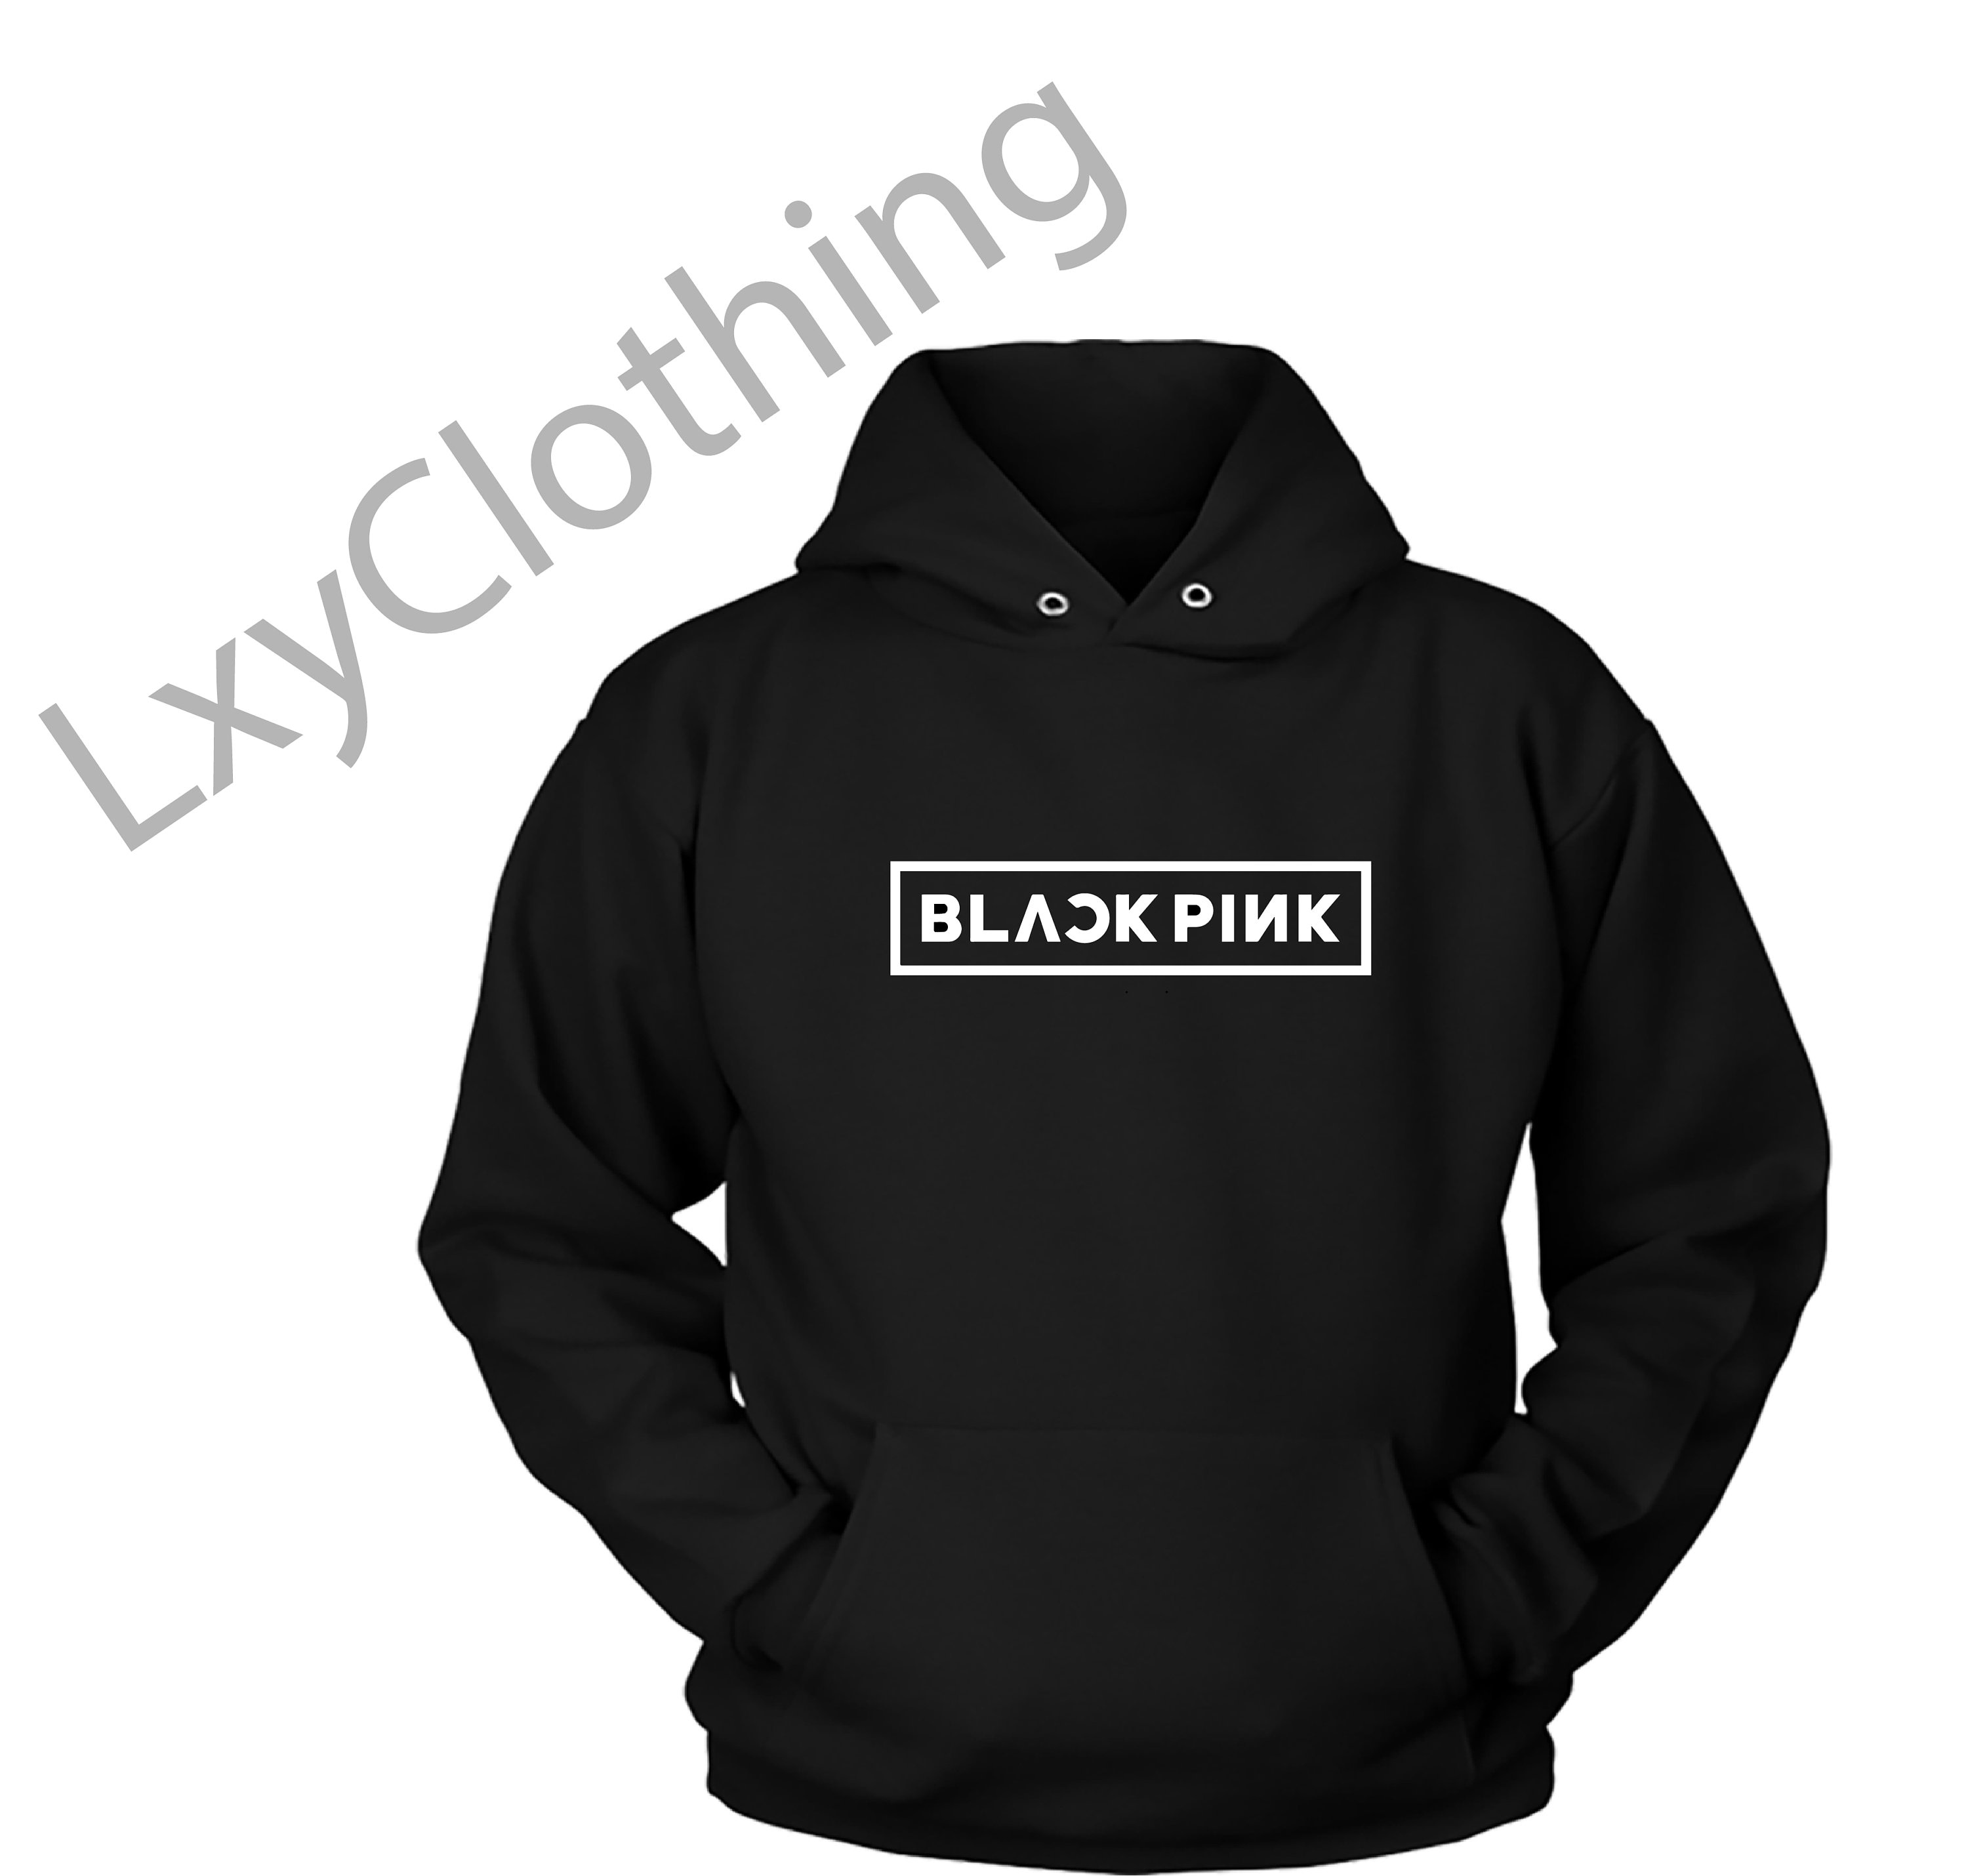 Blackpink Sweatshirt Hoodie, Blackpink Merch, Lisa Jisoo Jennie Rose ...